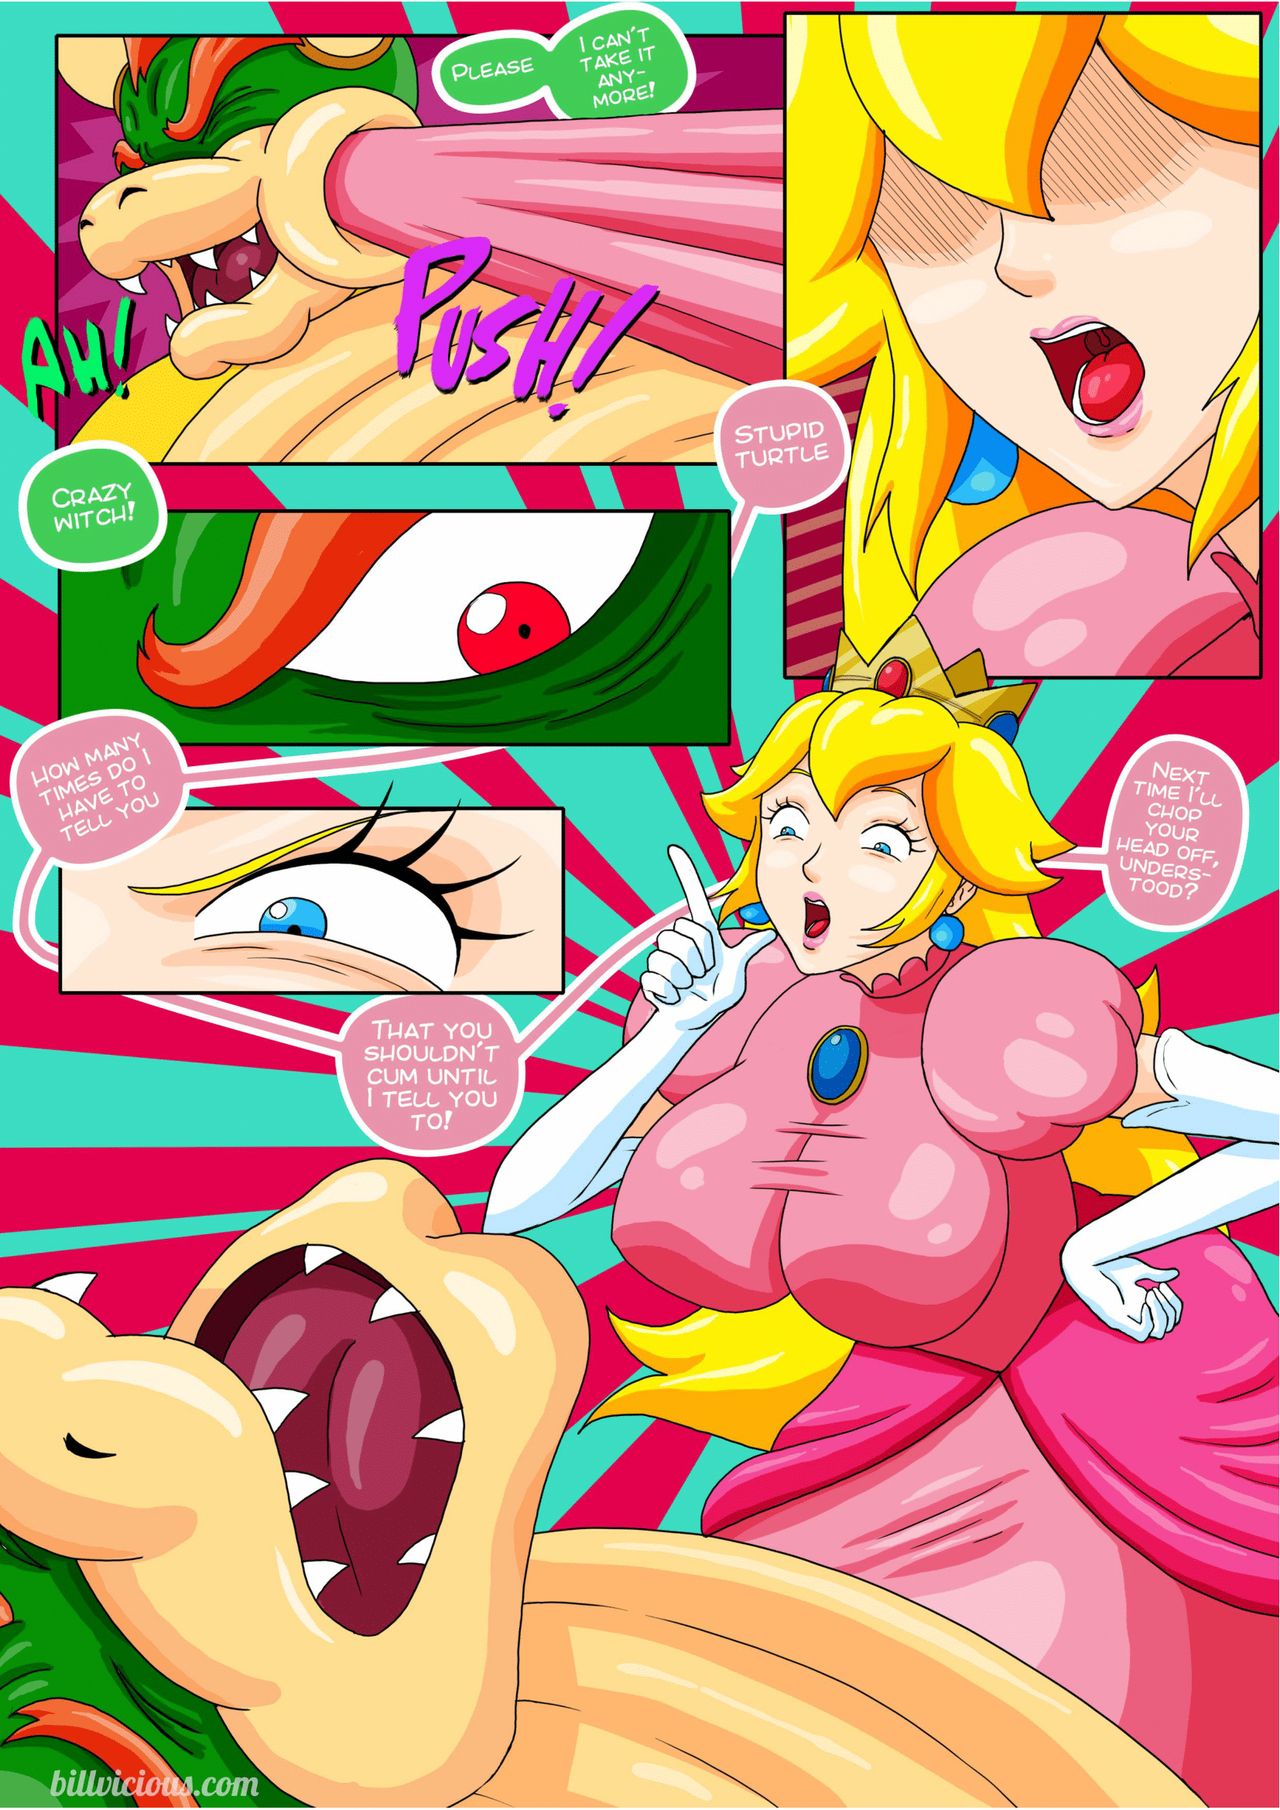 Nintendo Fantasies - Peach x Samus- Bill Vicious.